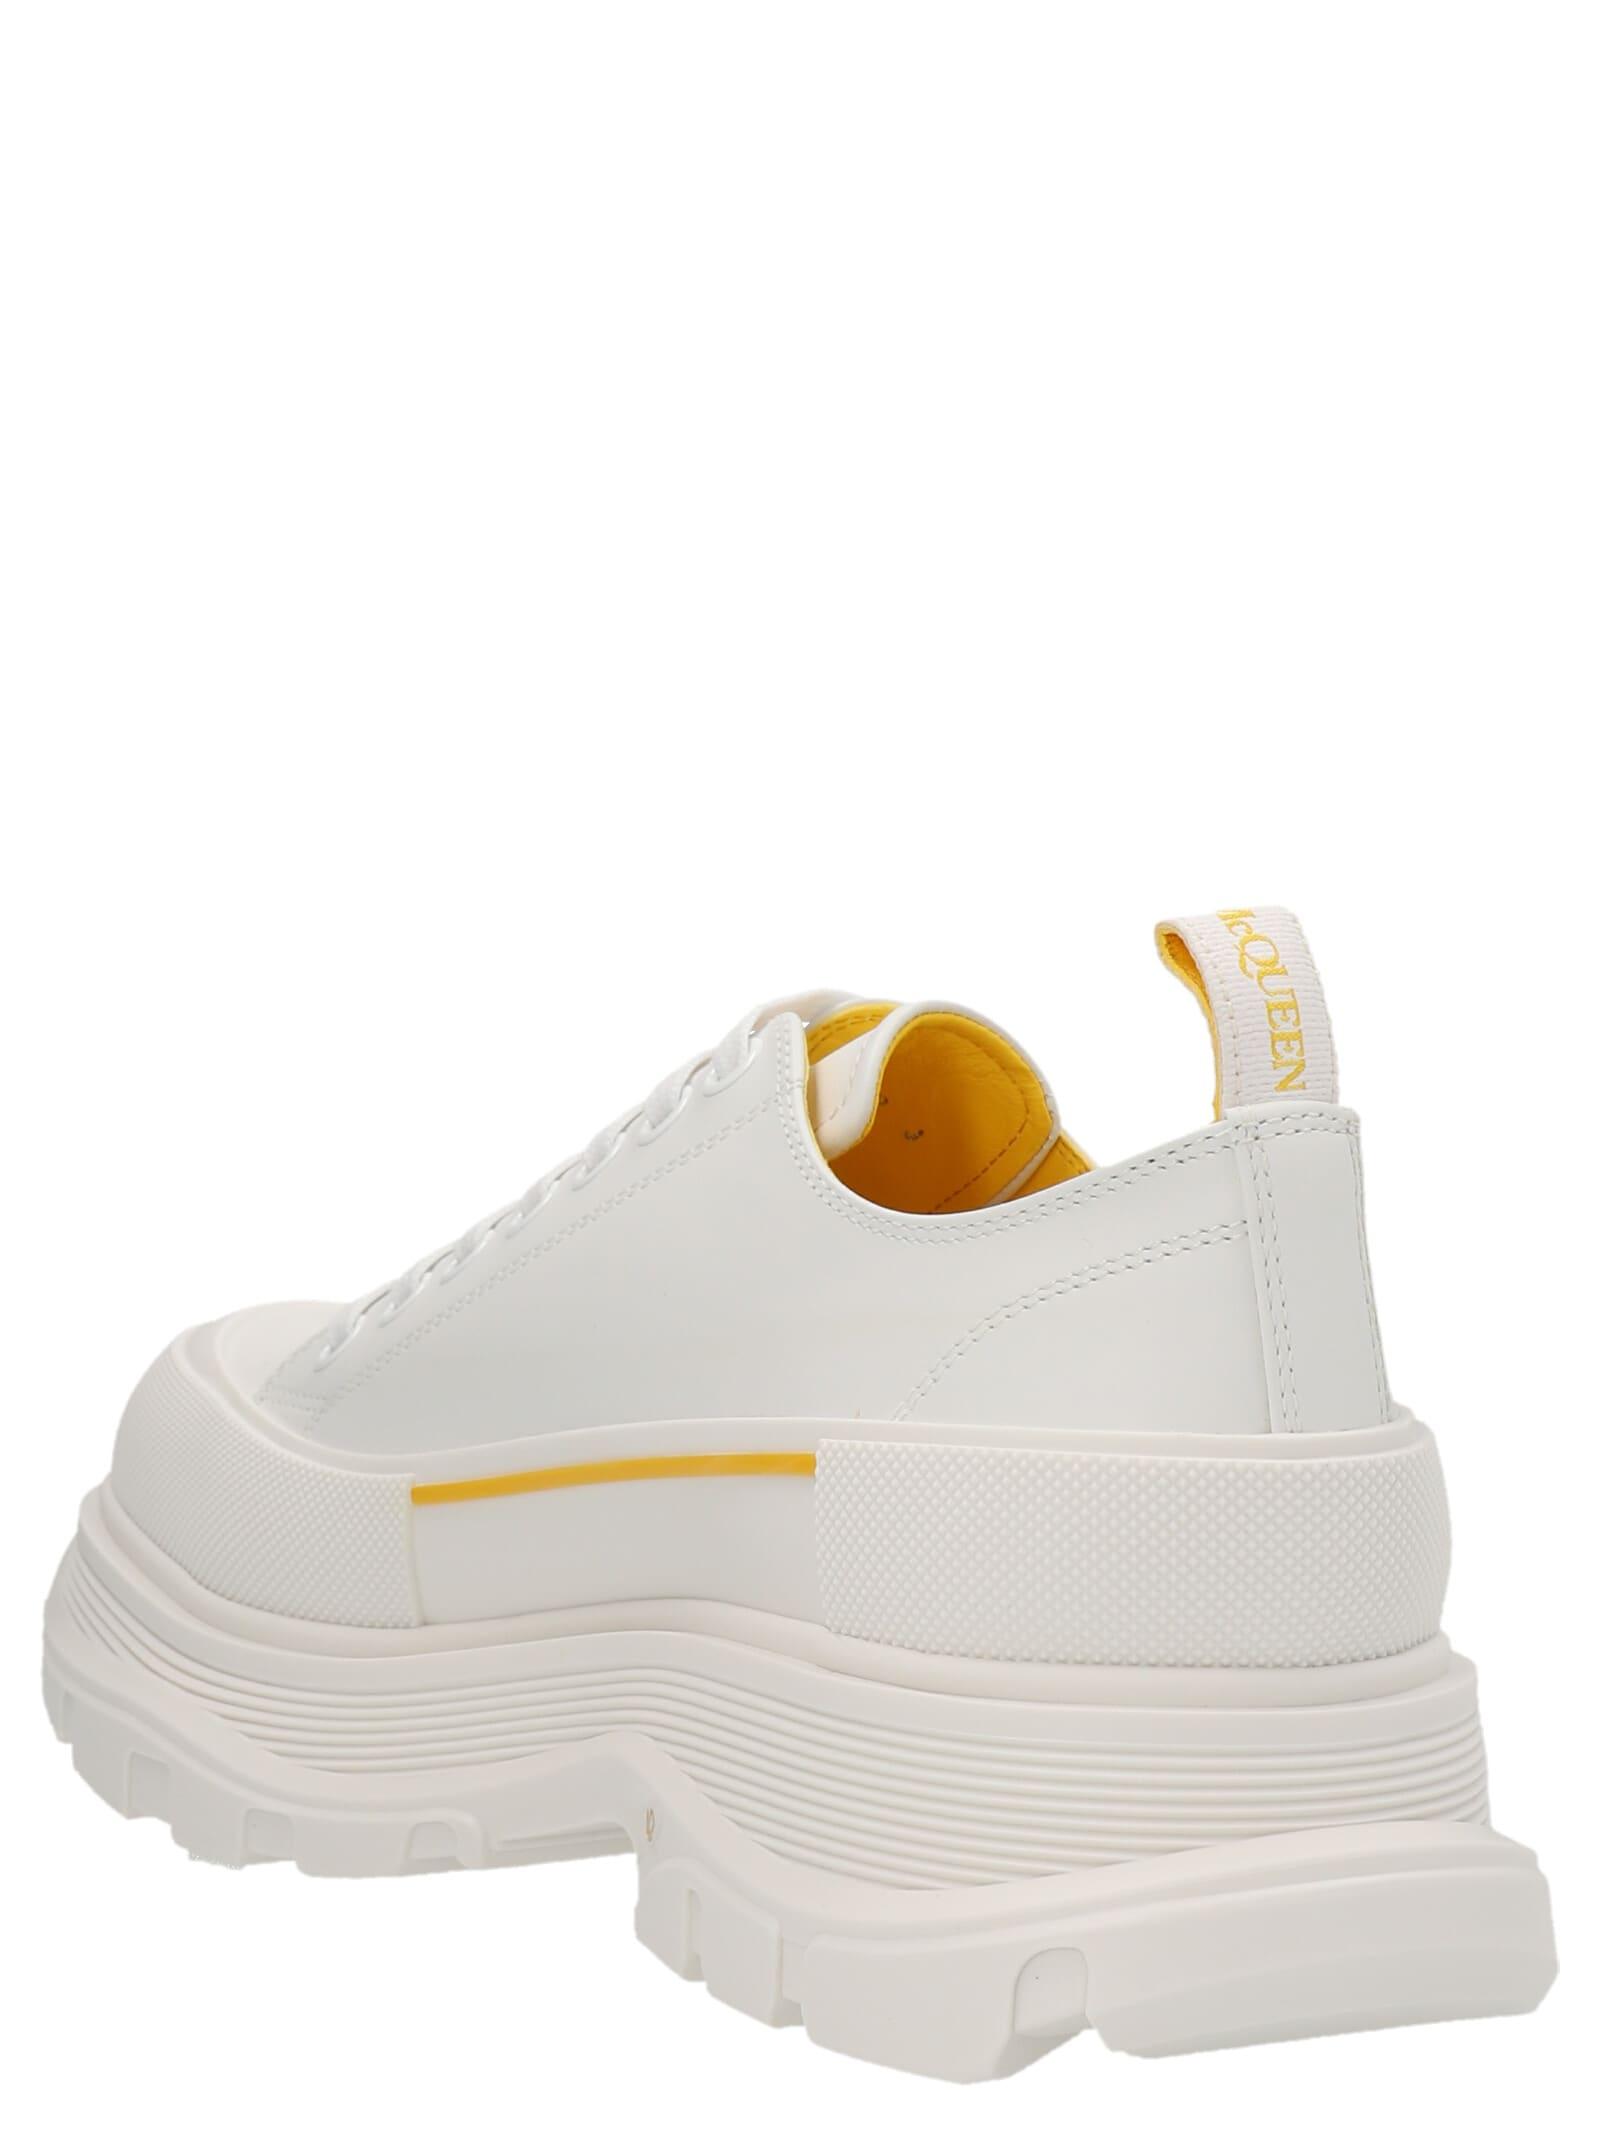 Alexander McQueen Tread Slick Sneakers in Yellow for Men | Lyst